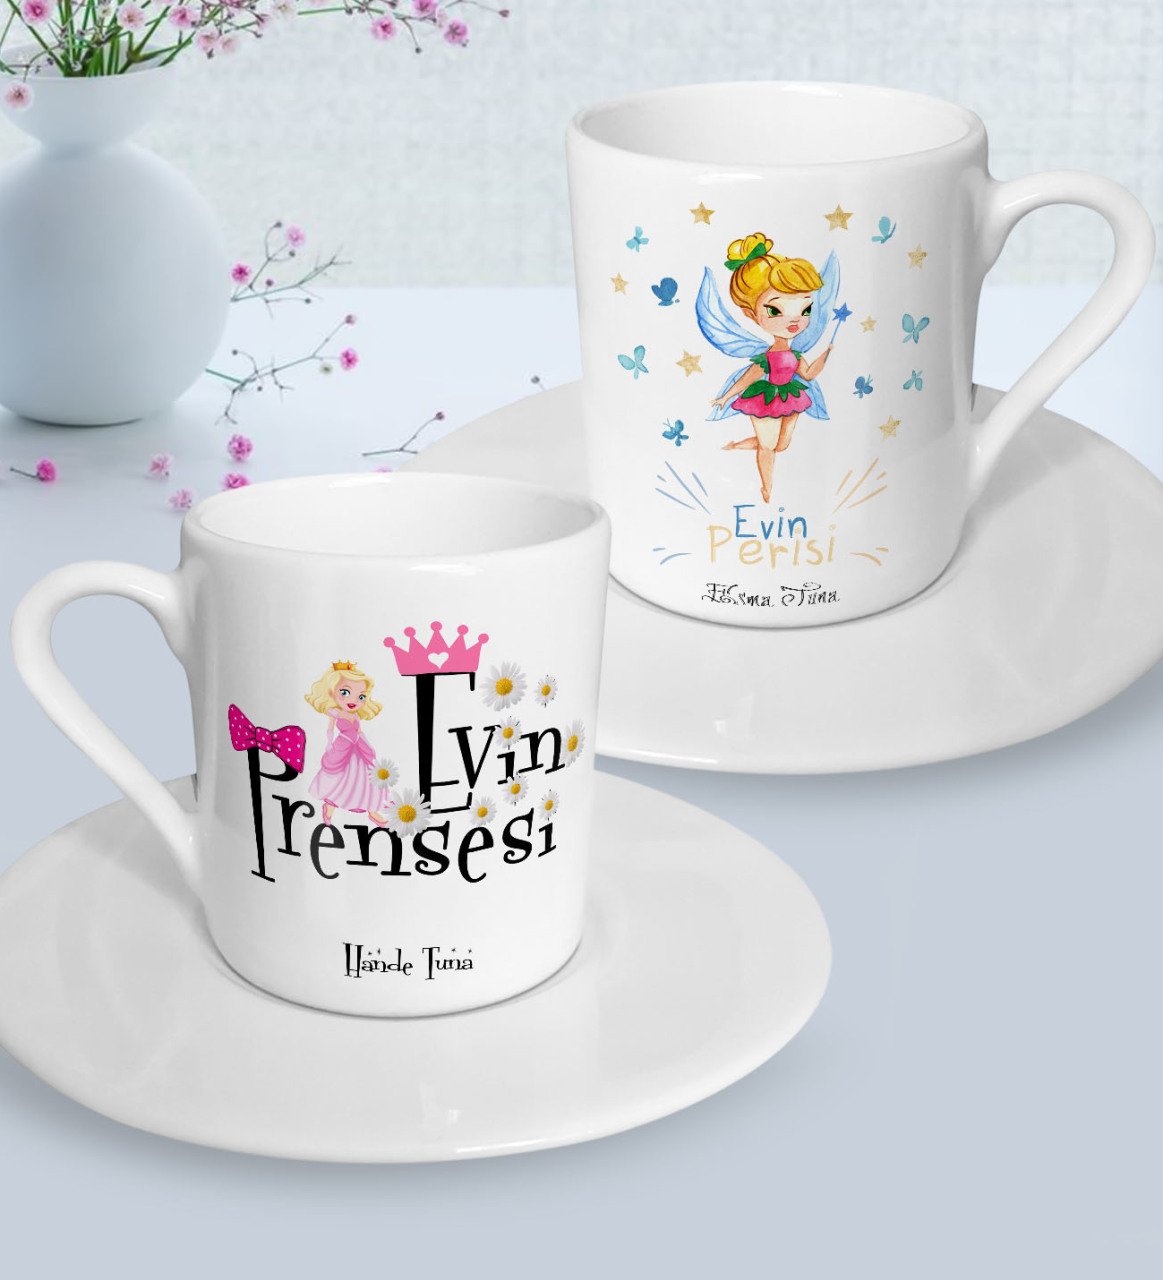 Kişiye Özel Anneler Günü Temalı Evin Prensesi ve Evin Perisi Tasarımlı İkili Türk Kahvesi Fincanı Seti-1